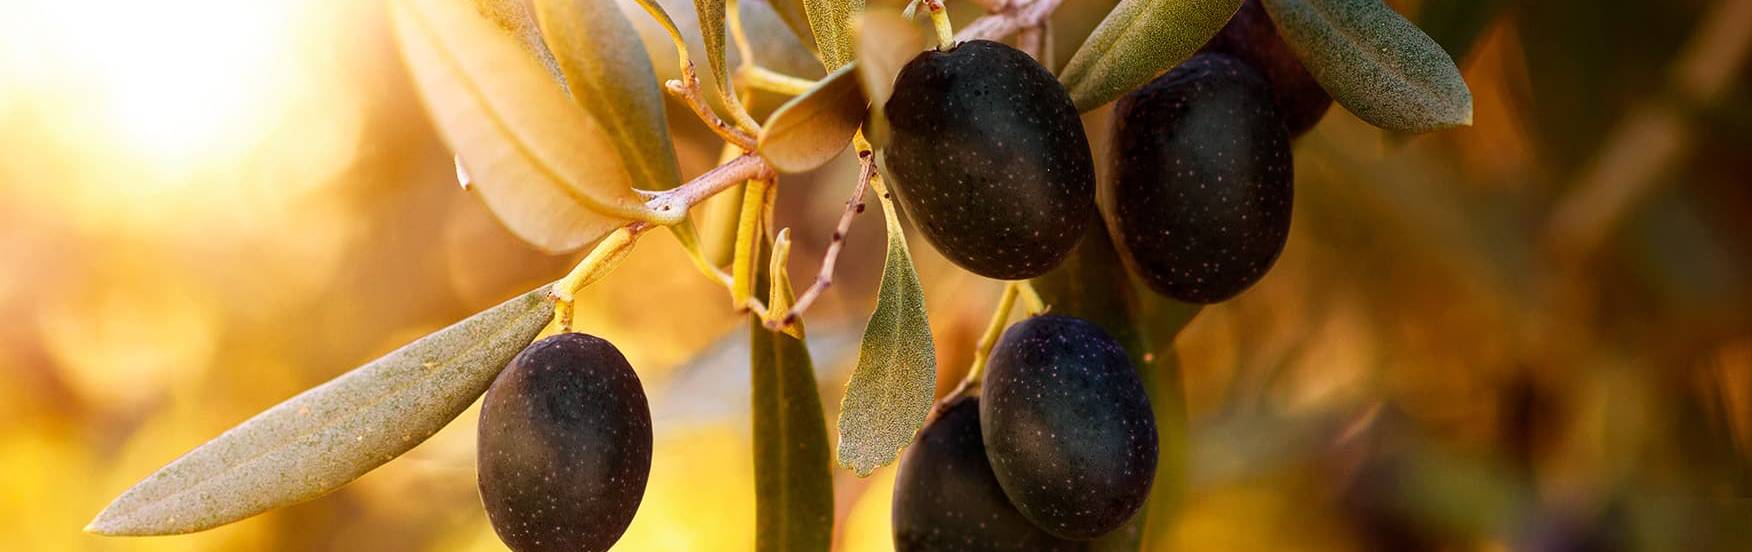 banner-olives-noires-v2